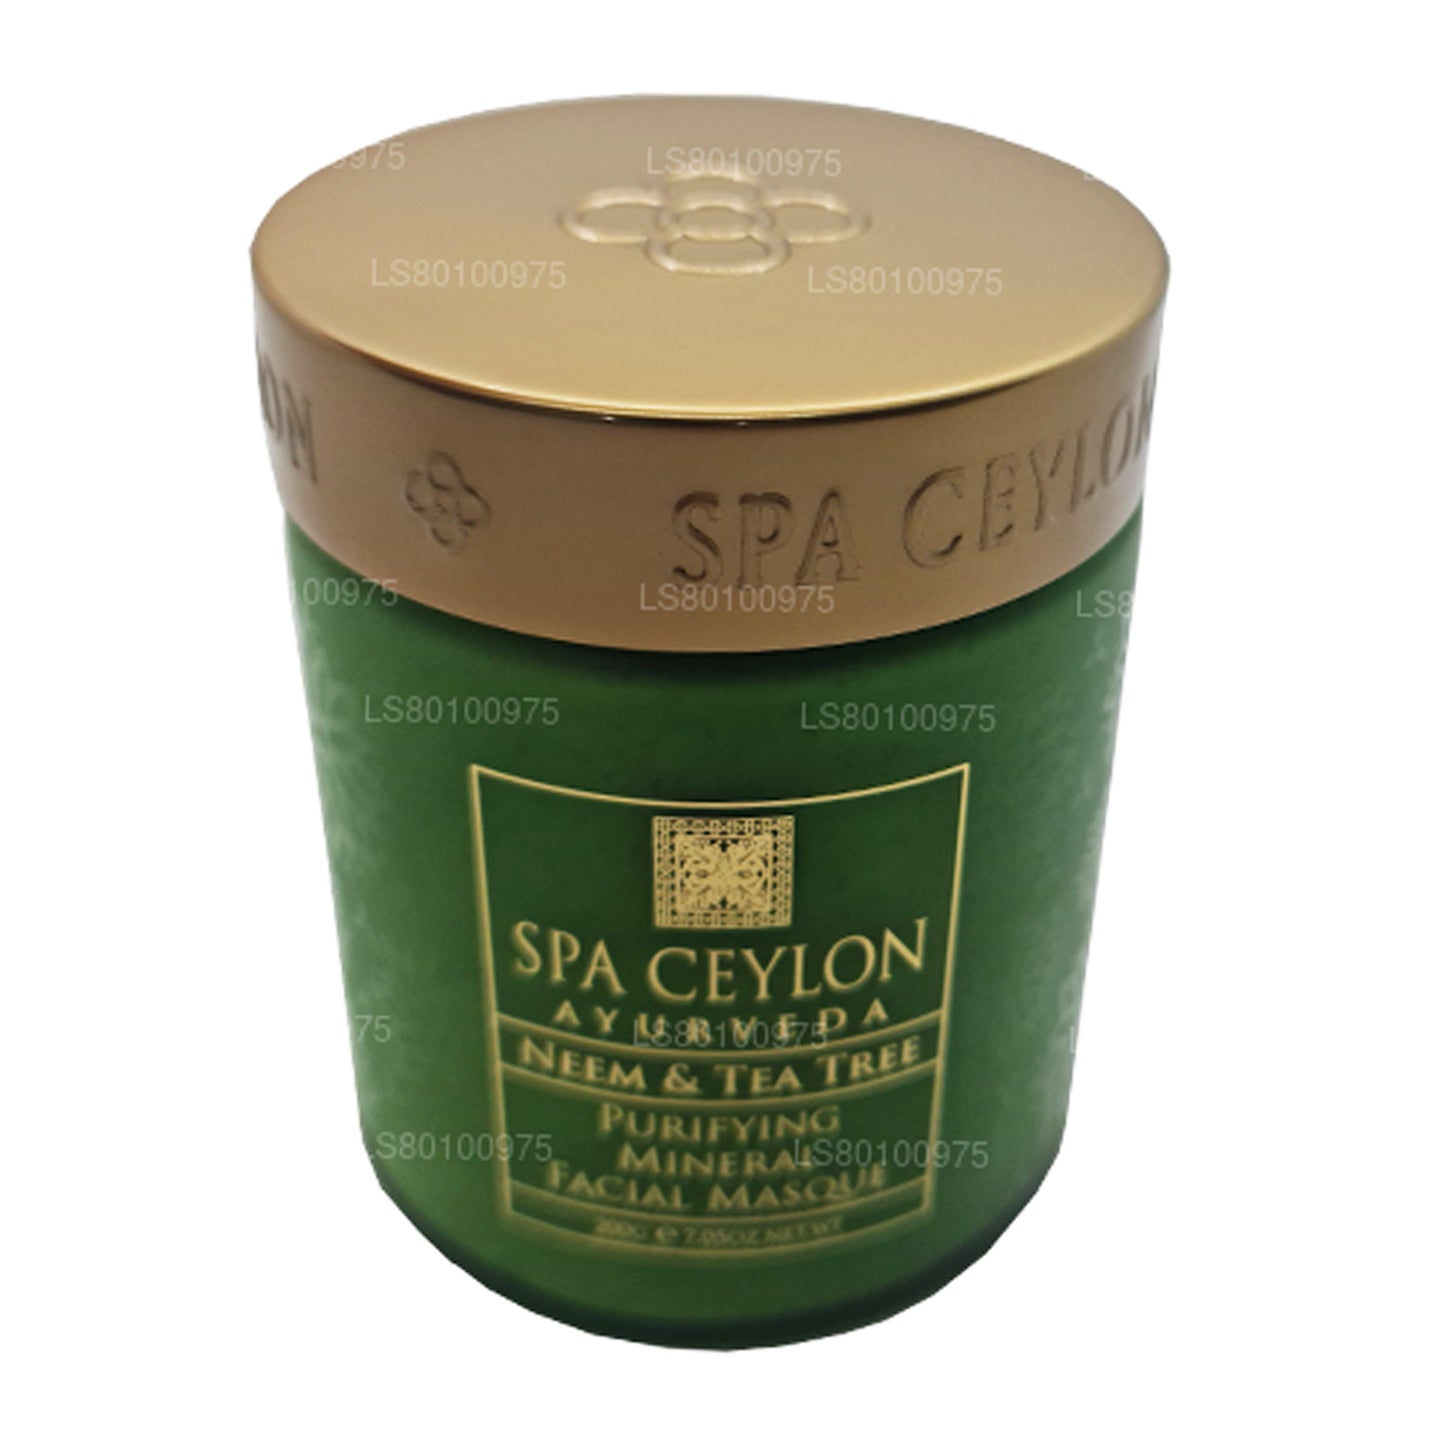 Spa Ceylon zuiverend mineraalmasker voor neem en theeboom (200 g)